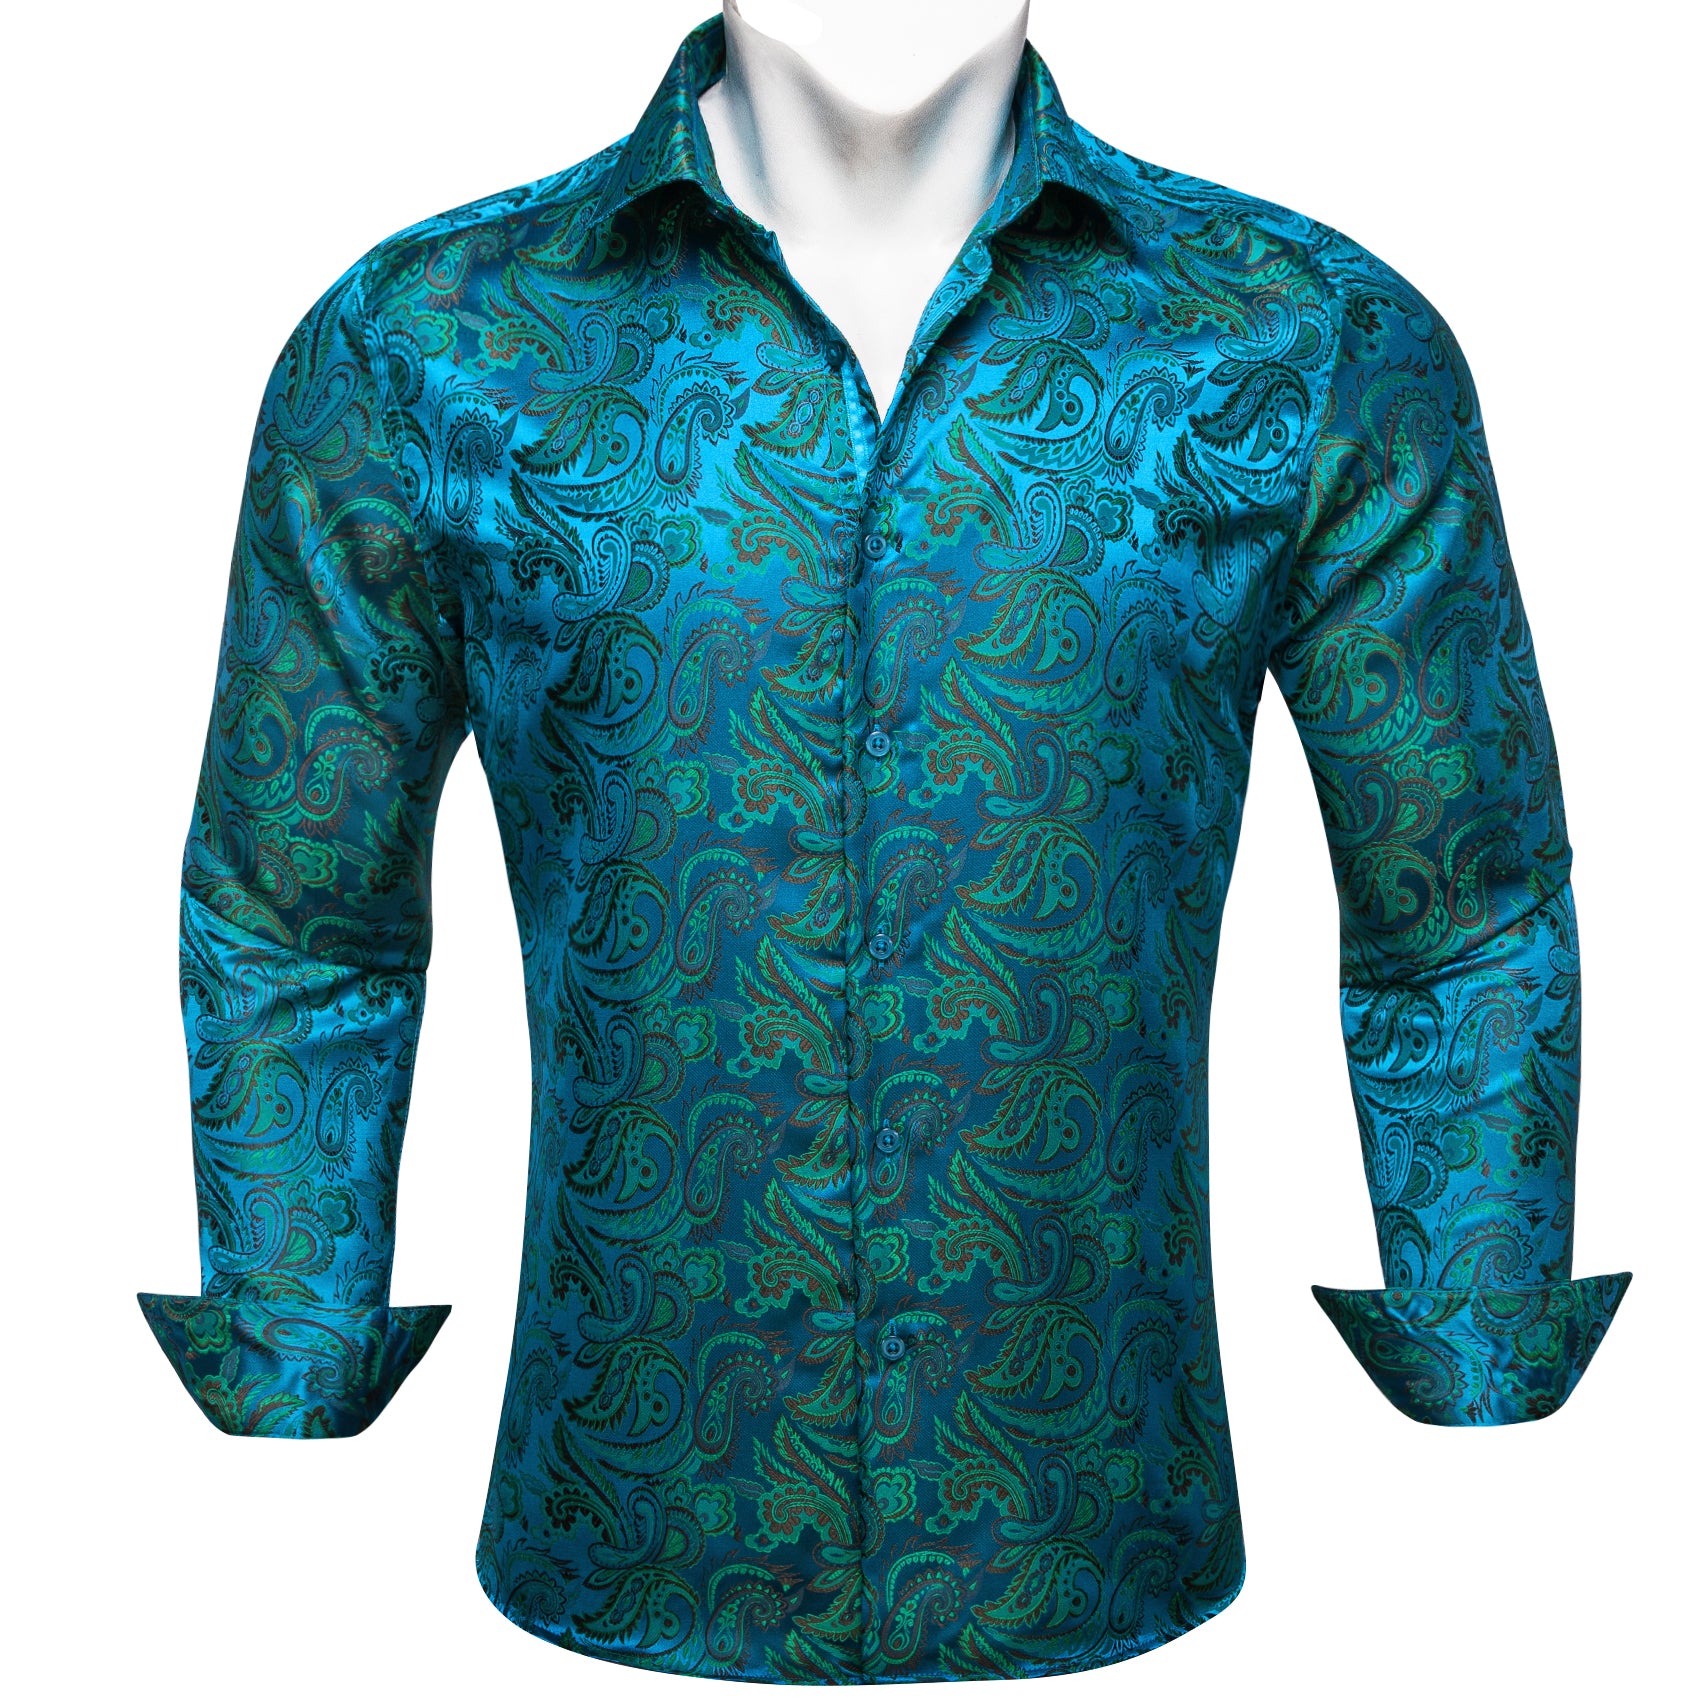 Barry.wang Blue Green Paisley Silk Men's Shirt